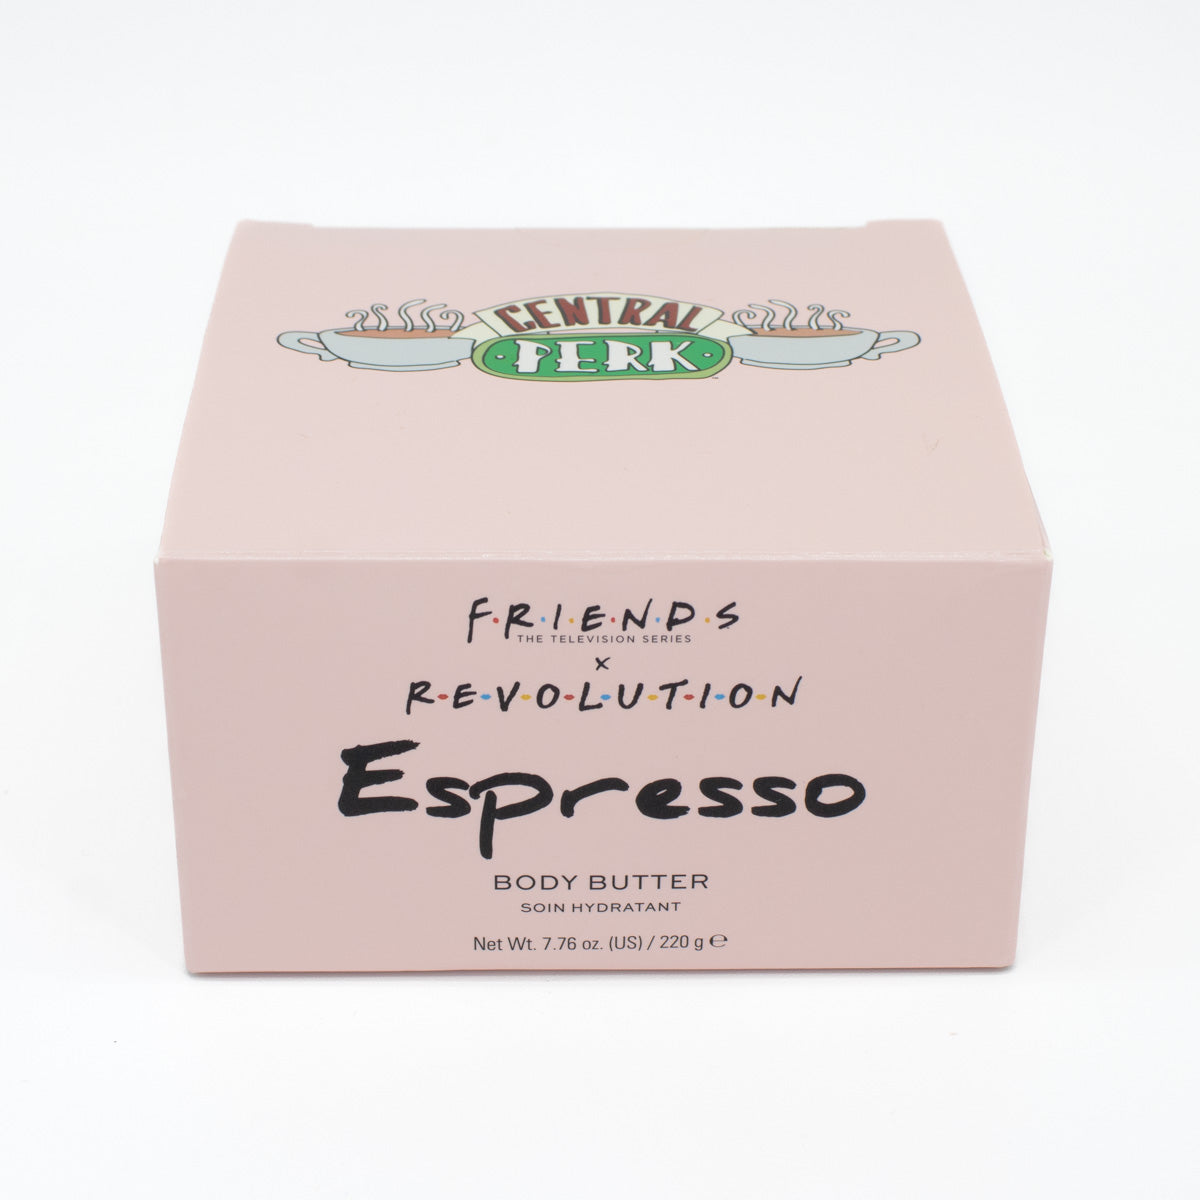 REVOLUTION X Friends Espresso Body Butter 7.76oz - Imperfect Box